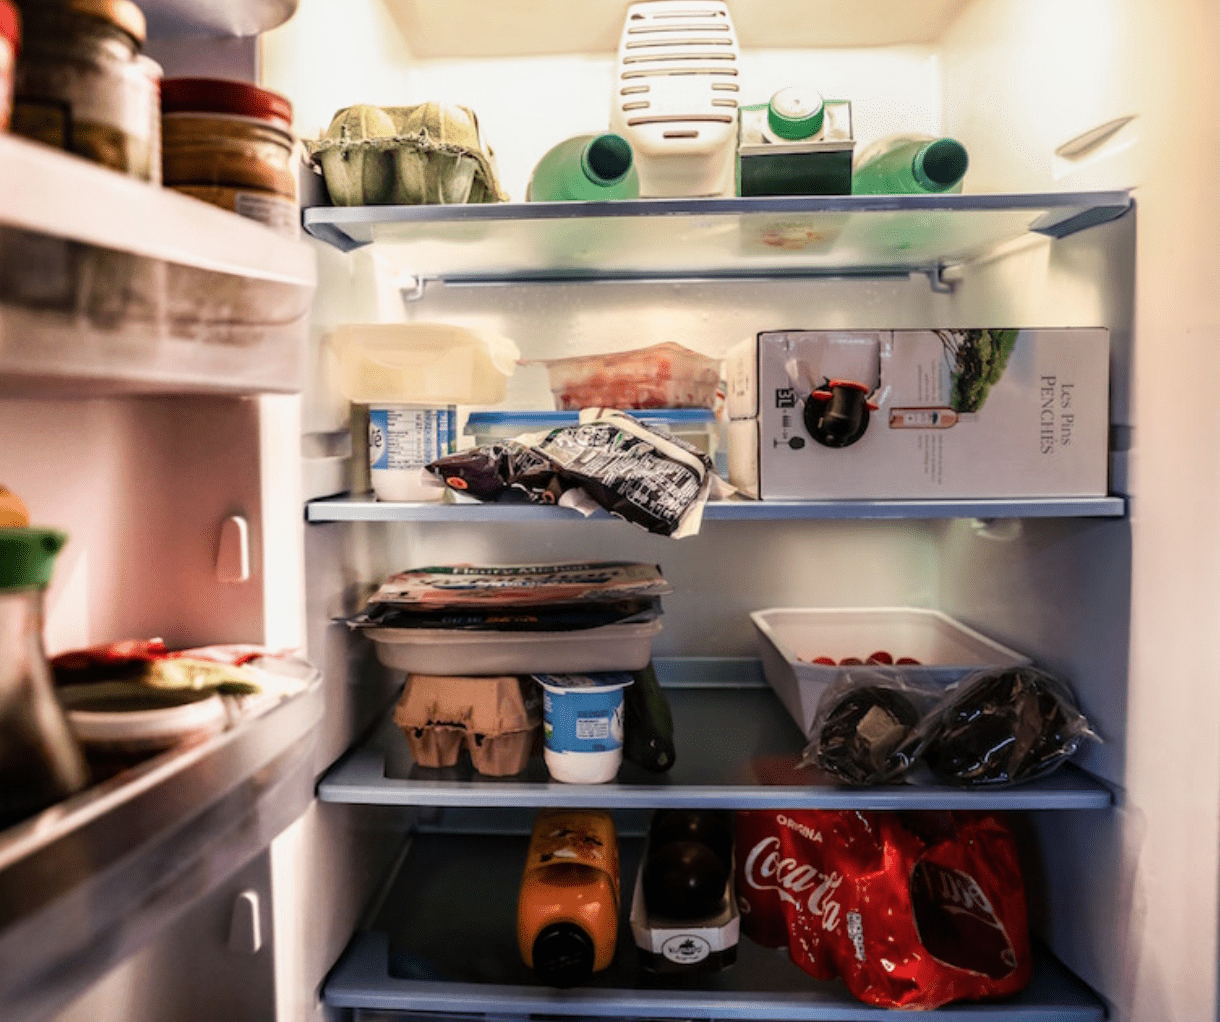 clean a fridge with vinegar